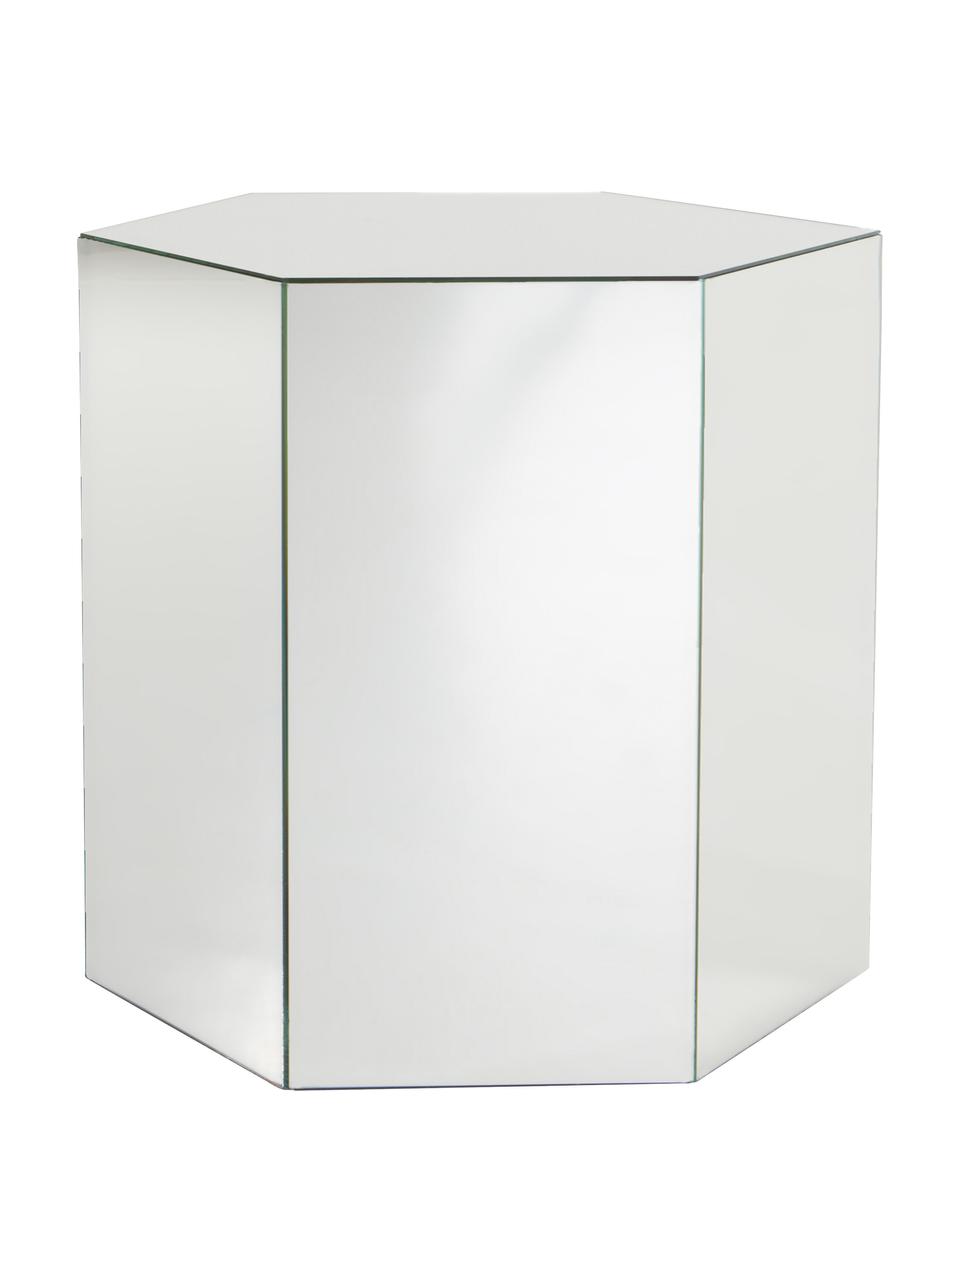 Table d'appoint effet verre miroir Scrape, MDF (panneau en fibres de bois à densité moyenne), verre miroir, Verre miroir, larg. 40 x haut. 40 cm